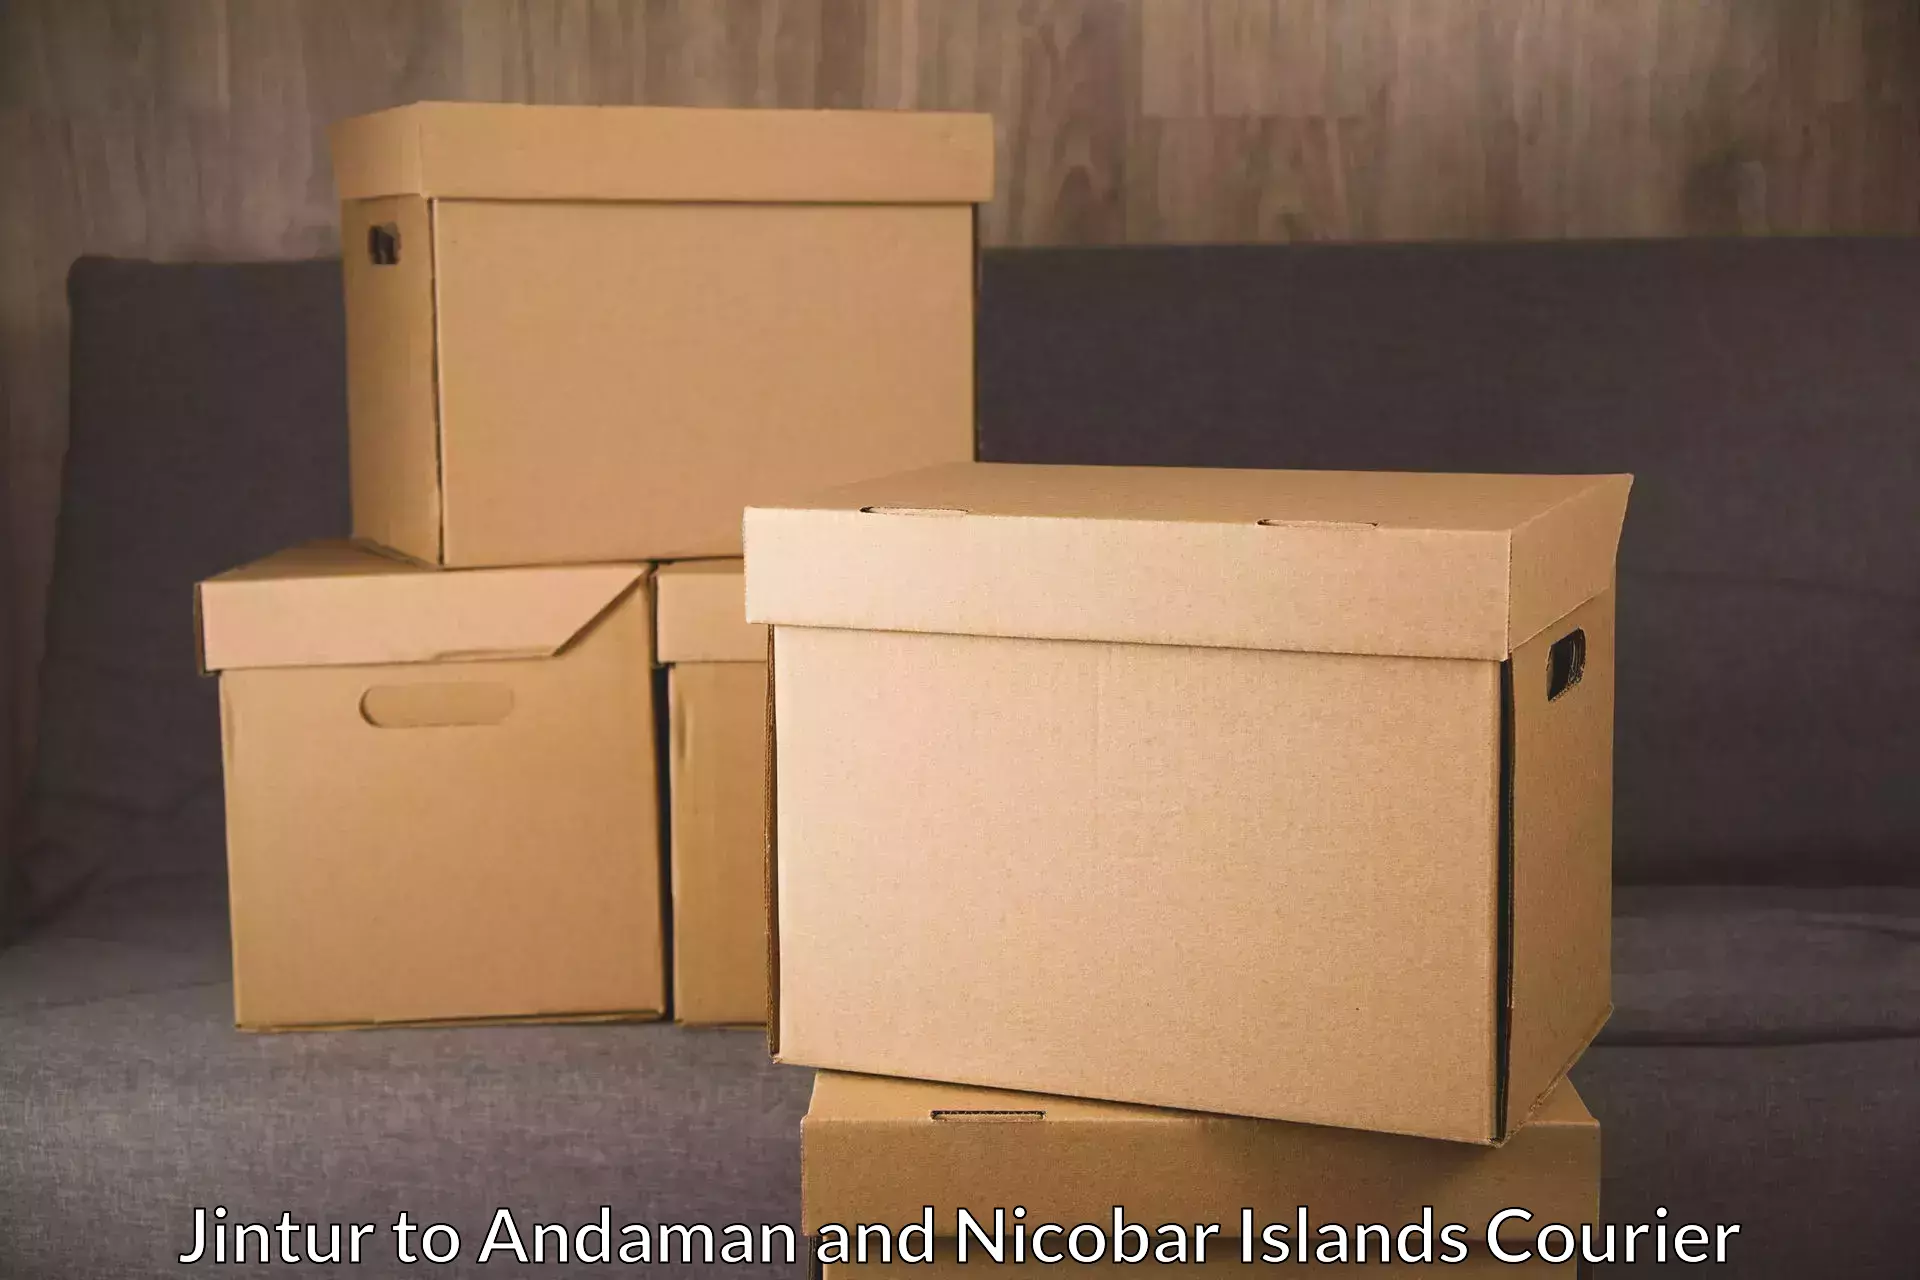 Digital courier platforms Jintur to Andaman and Nicobar Islands